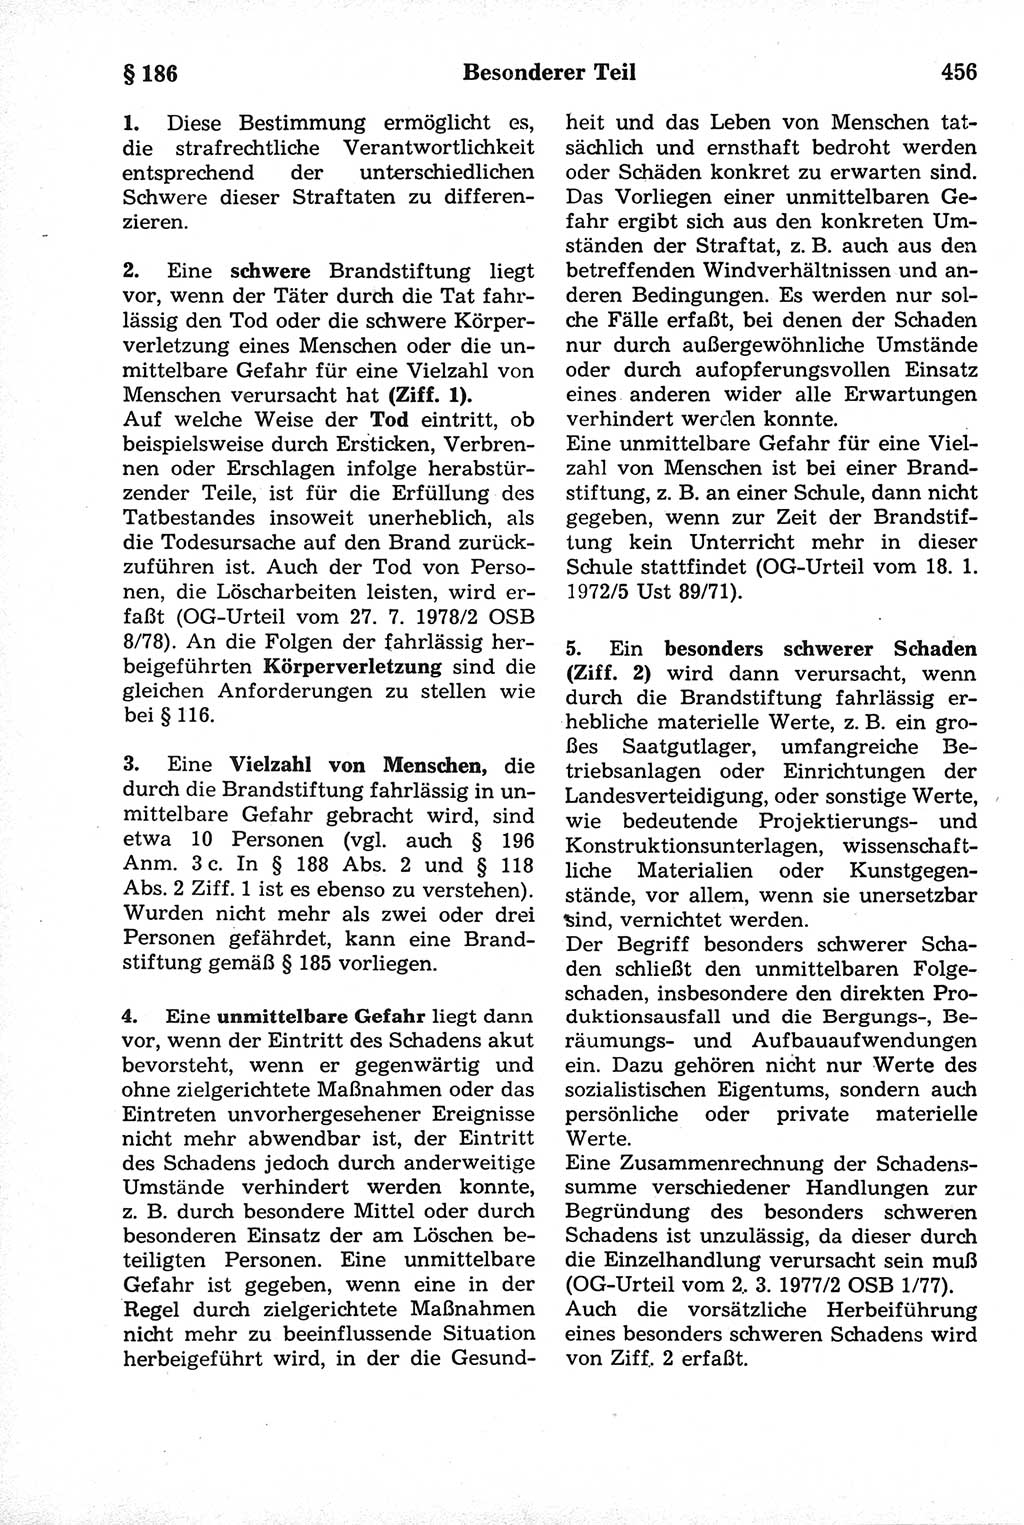 Strafrecht der Deutschen Demokratischen Republik (DDR), Kommentar zum Strafgesetzbuch (StGB) 1981, Seite 456 (Strafr. DDR Komm. StGB 1981, S. 456)